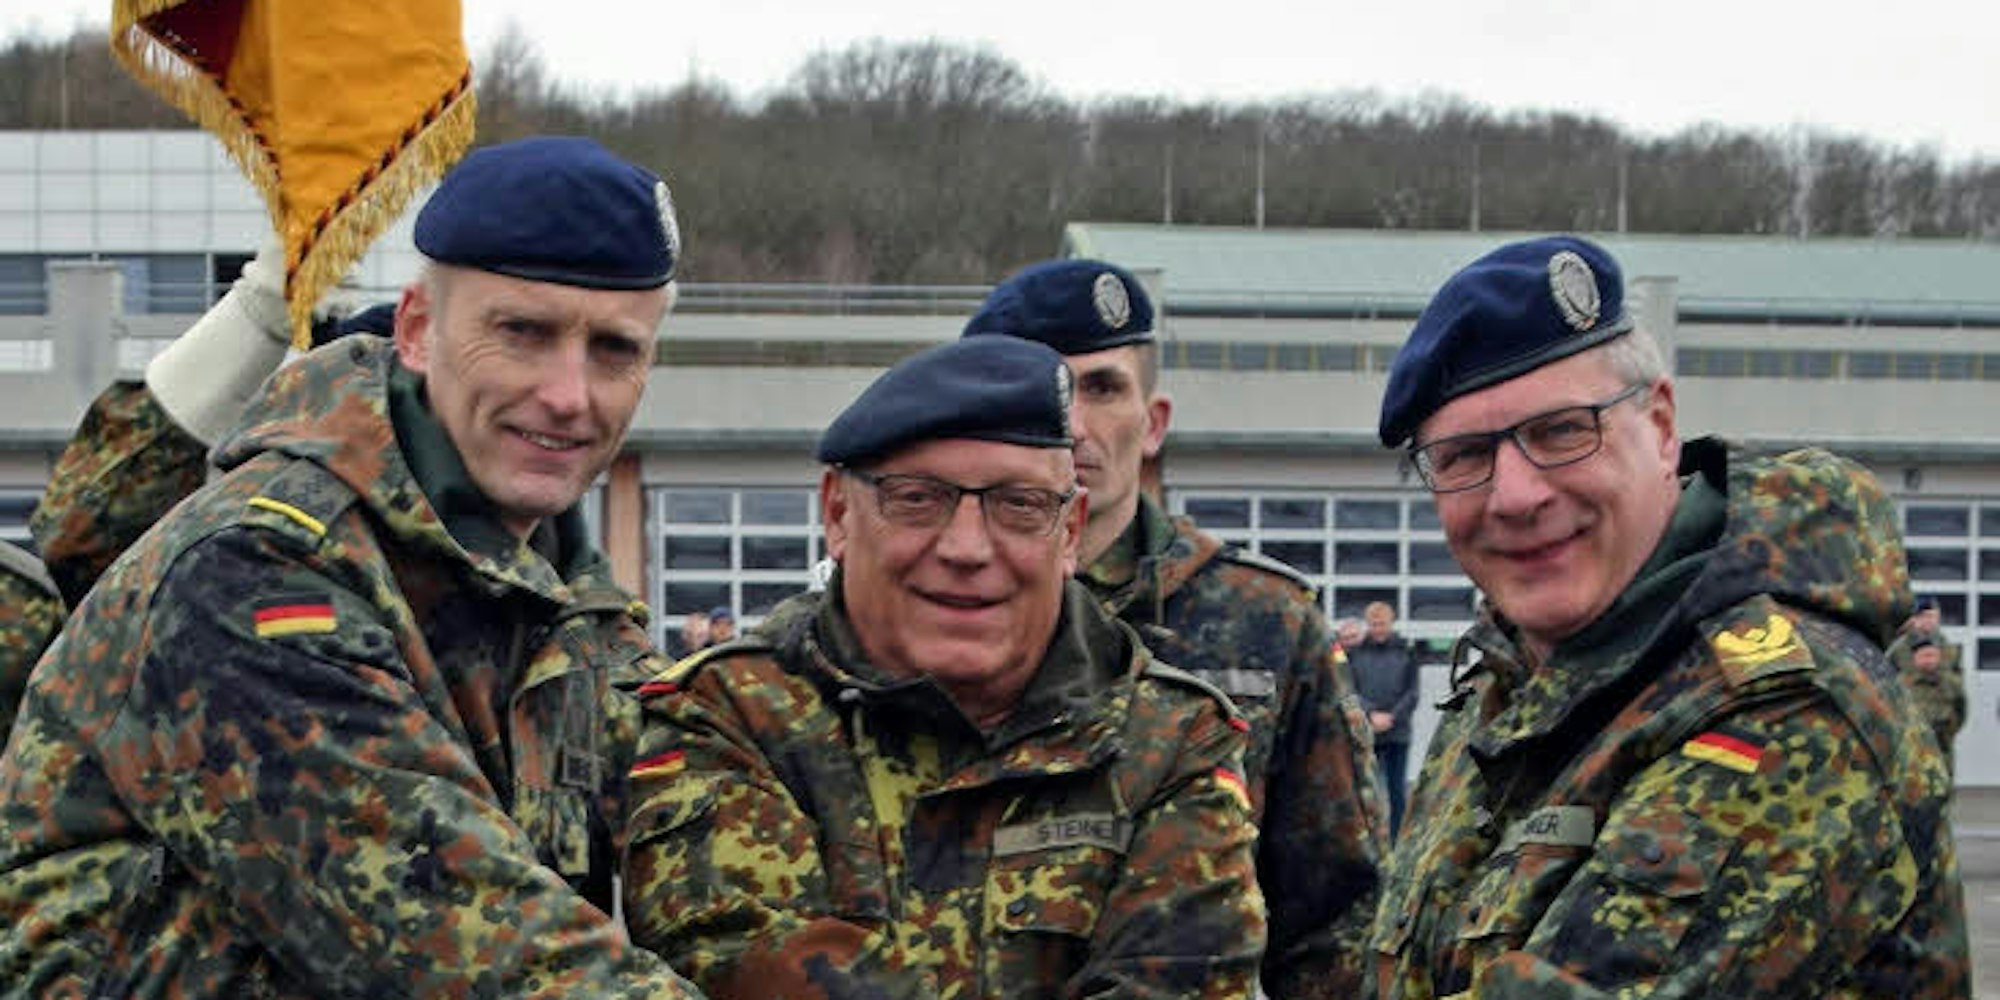 Oberst Rainer Beeck, Generalmajor Heinrich Steiner und Brigadegeneral Wolfgang E. Renner (v. l.) vollzogen den Kommandowechsel.